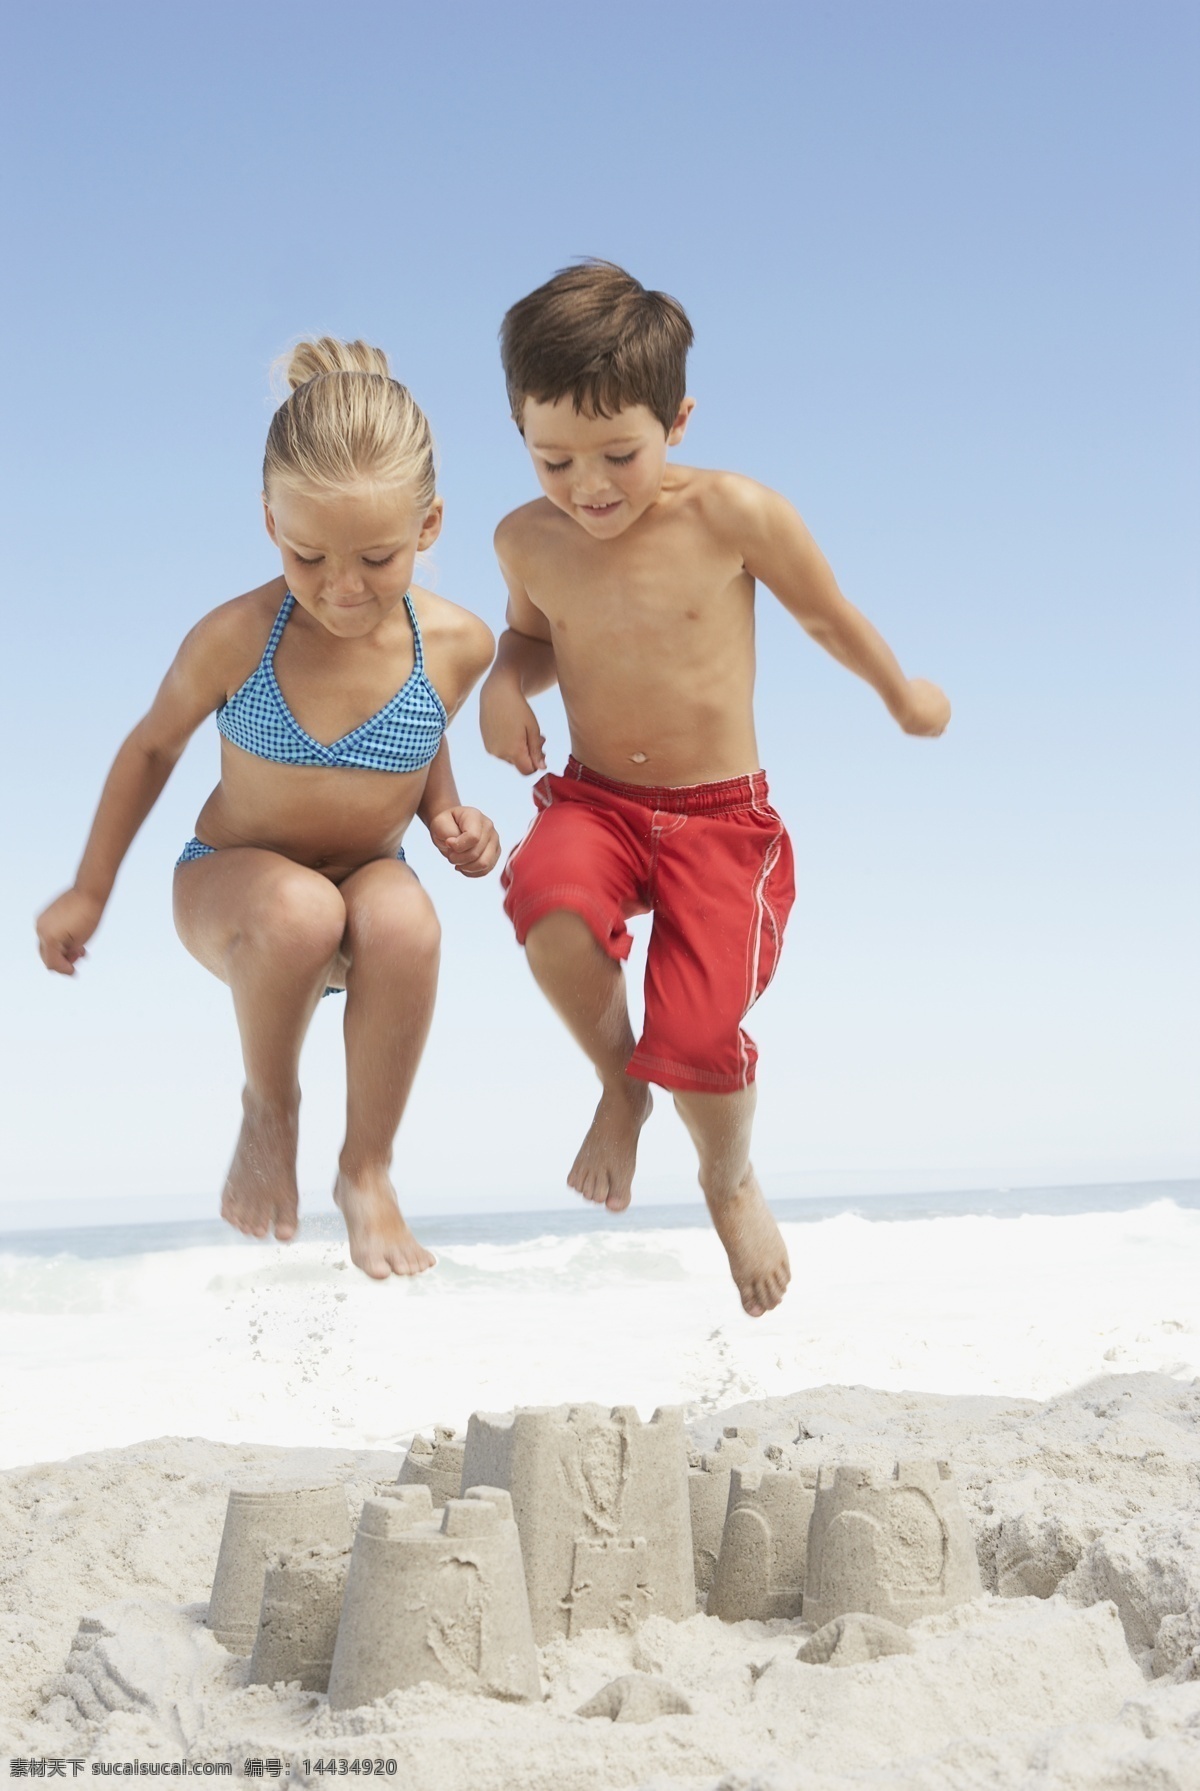 沙滩 上 玩耍 孩子 儿童 男孩 女孩 小男孩 小女孩 幸福 家庭 海边 跳跃 快乐 开心 嬉戏 海浪 稚气 生活人物 人物图库 人物图片